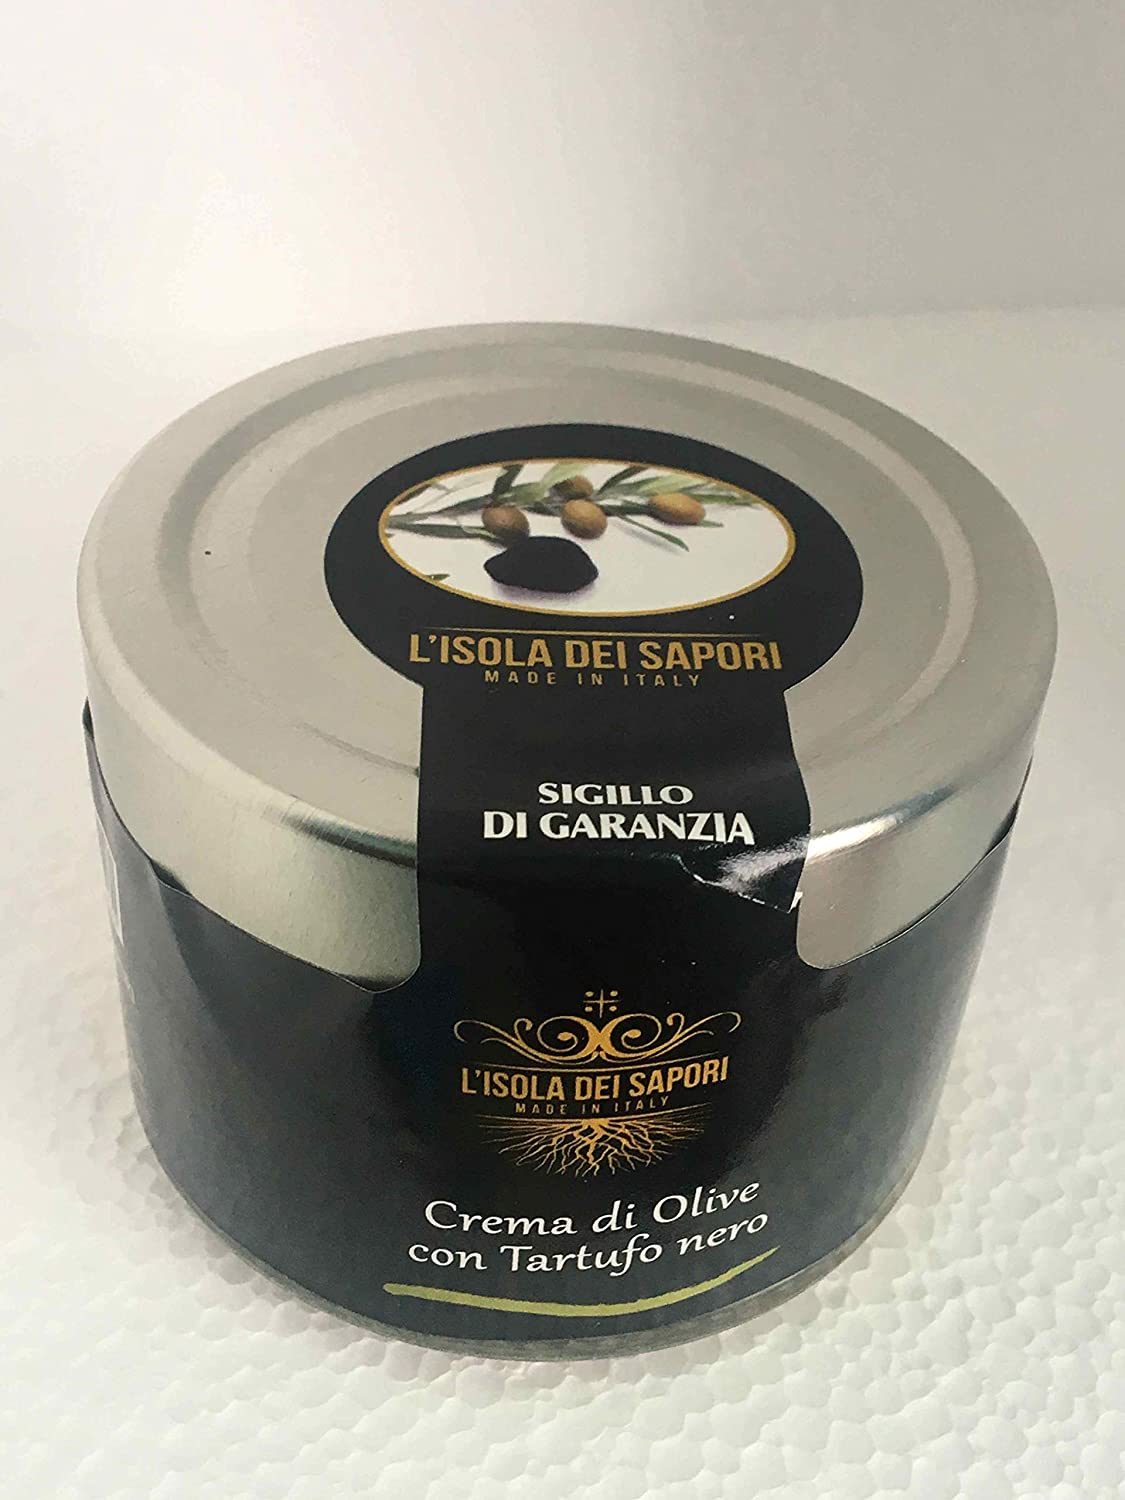 15 x 200 gr - Crema di olive artigianale prodotta con tartufo nero estivo, di Laconi. Lavorata daglia artigiani dell'Isola dei Sapori